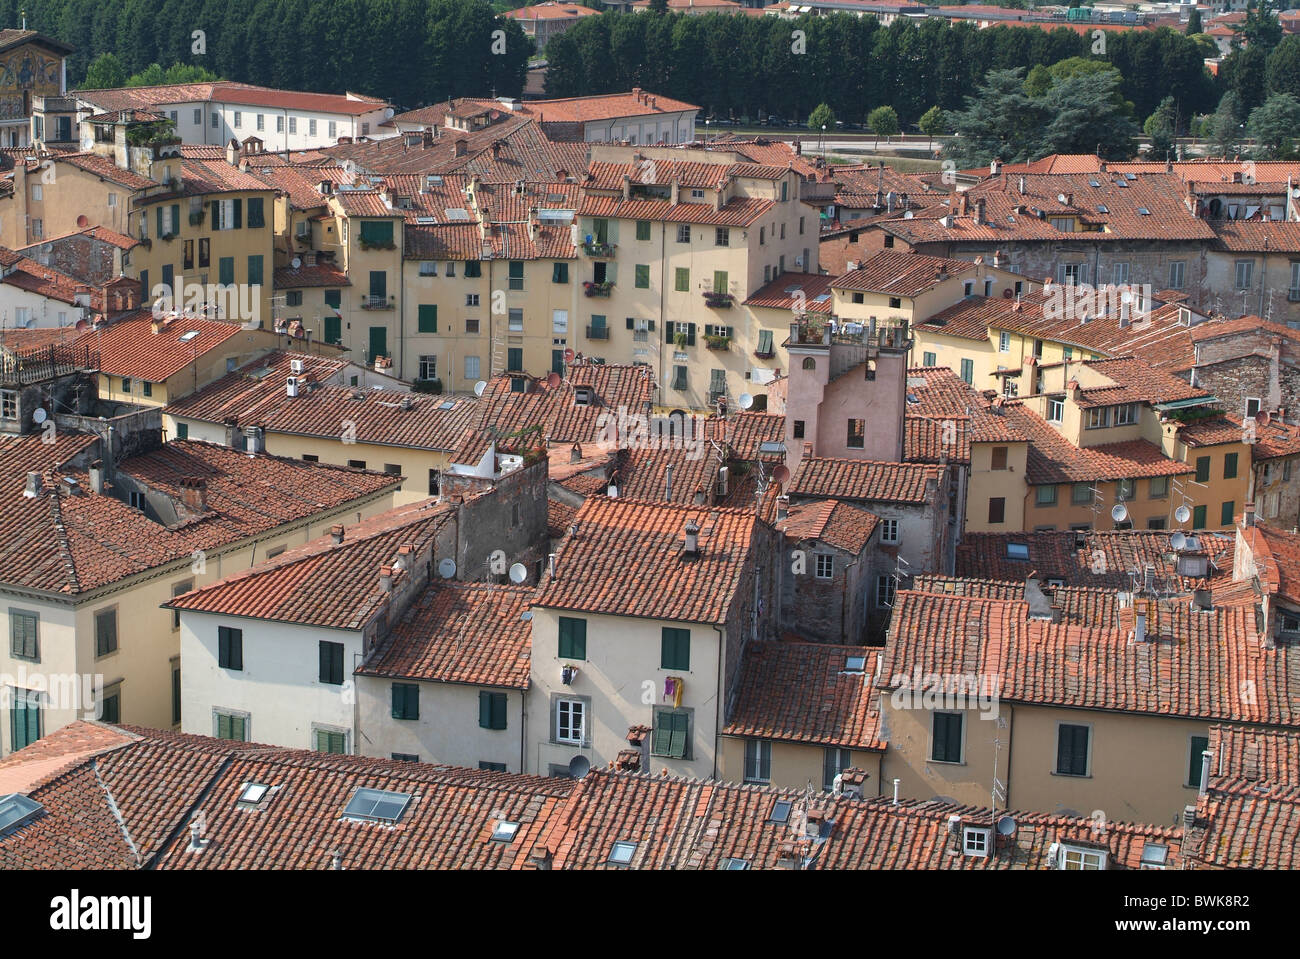 Italia Europa Toscana Toscana Lucca Piazza di dell' Anfiteatro città panoramica sui tetti della città vecchia Foto Stock